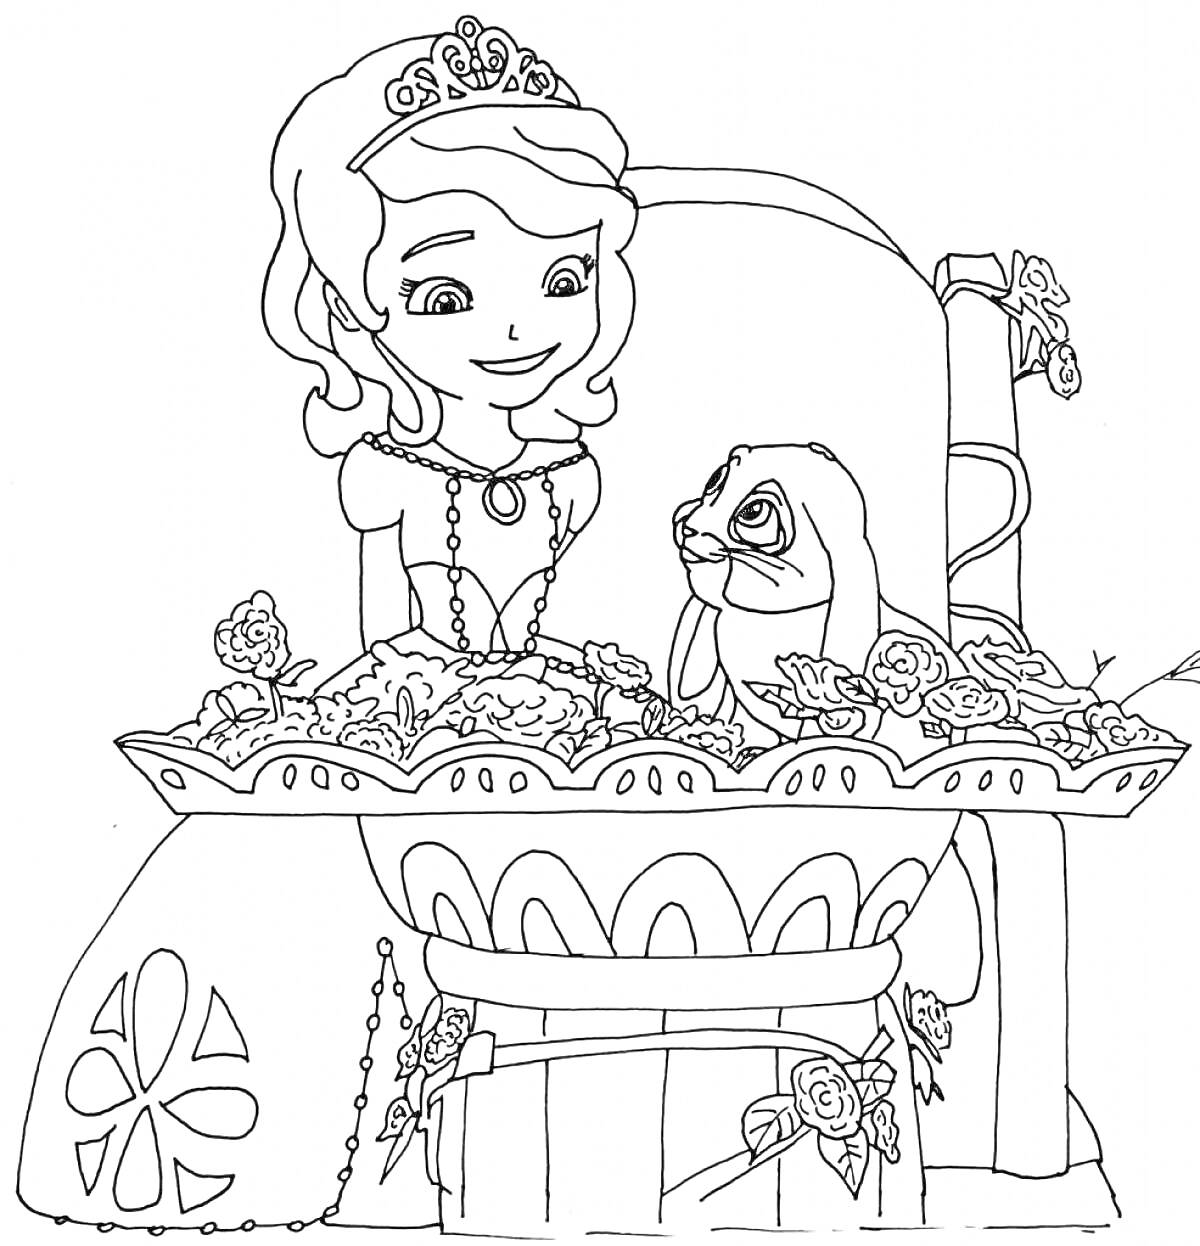 Раскраска Принцесса с диадемой и кроликом на троне, украшенном цветами